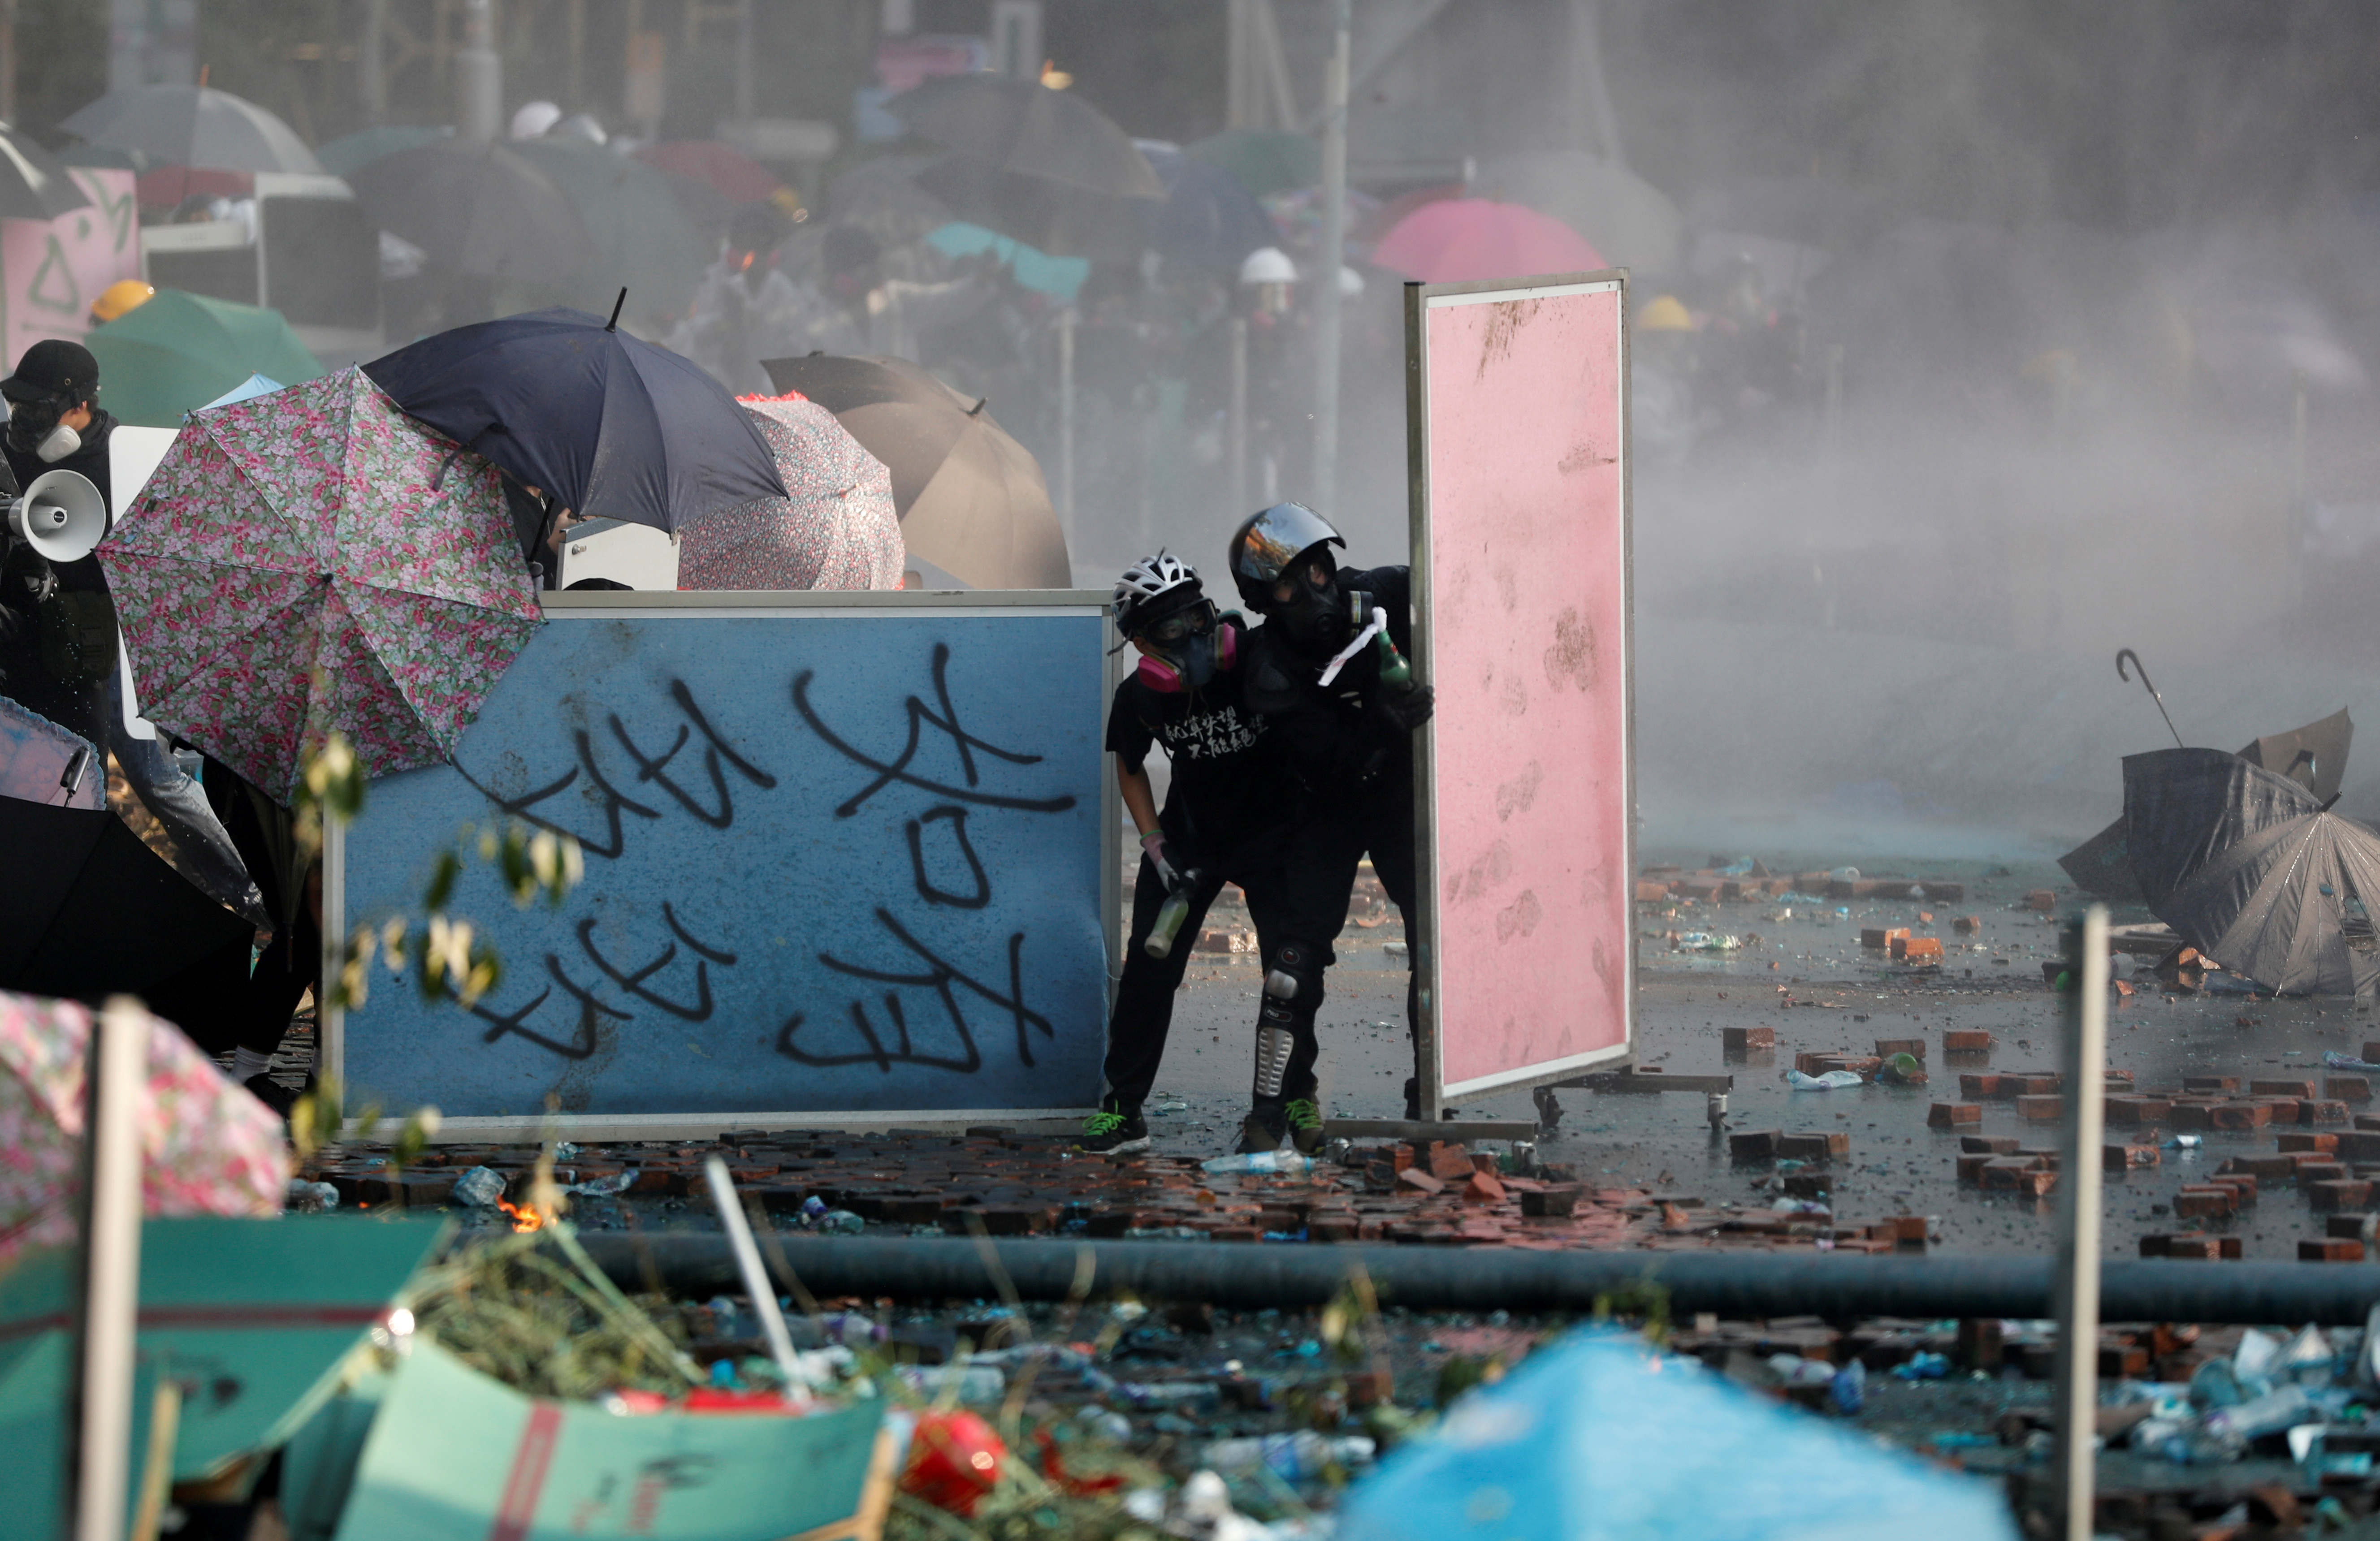 EN FOTOS: La tensión vuelve a Hong Kong con nuevos enfrentamientos frente a universidad